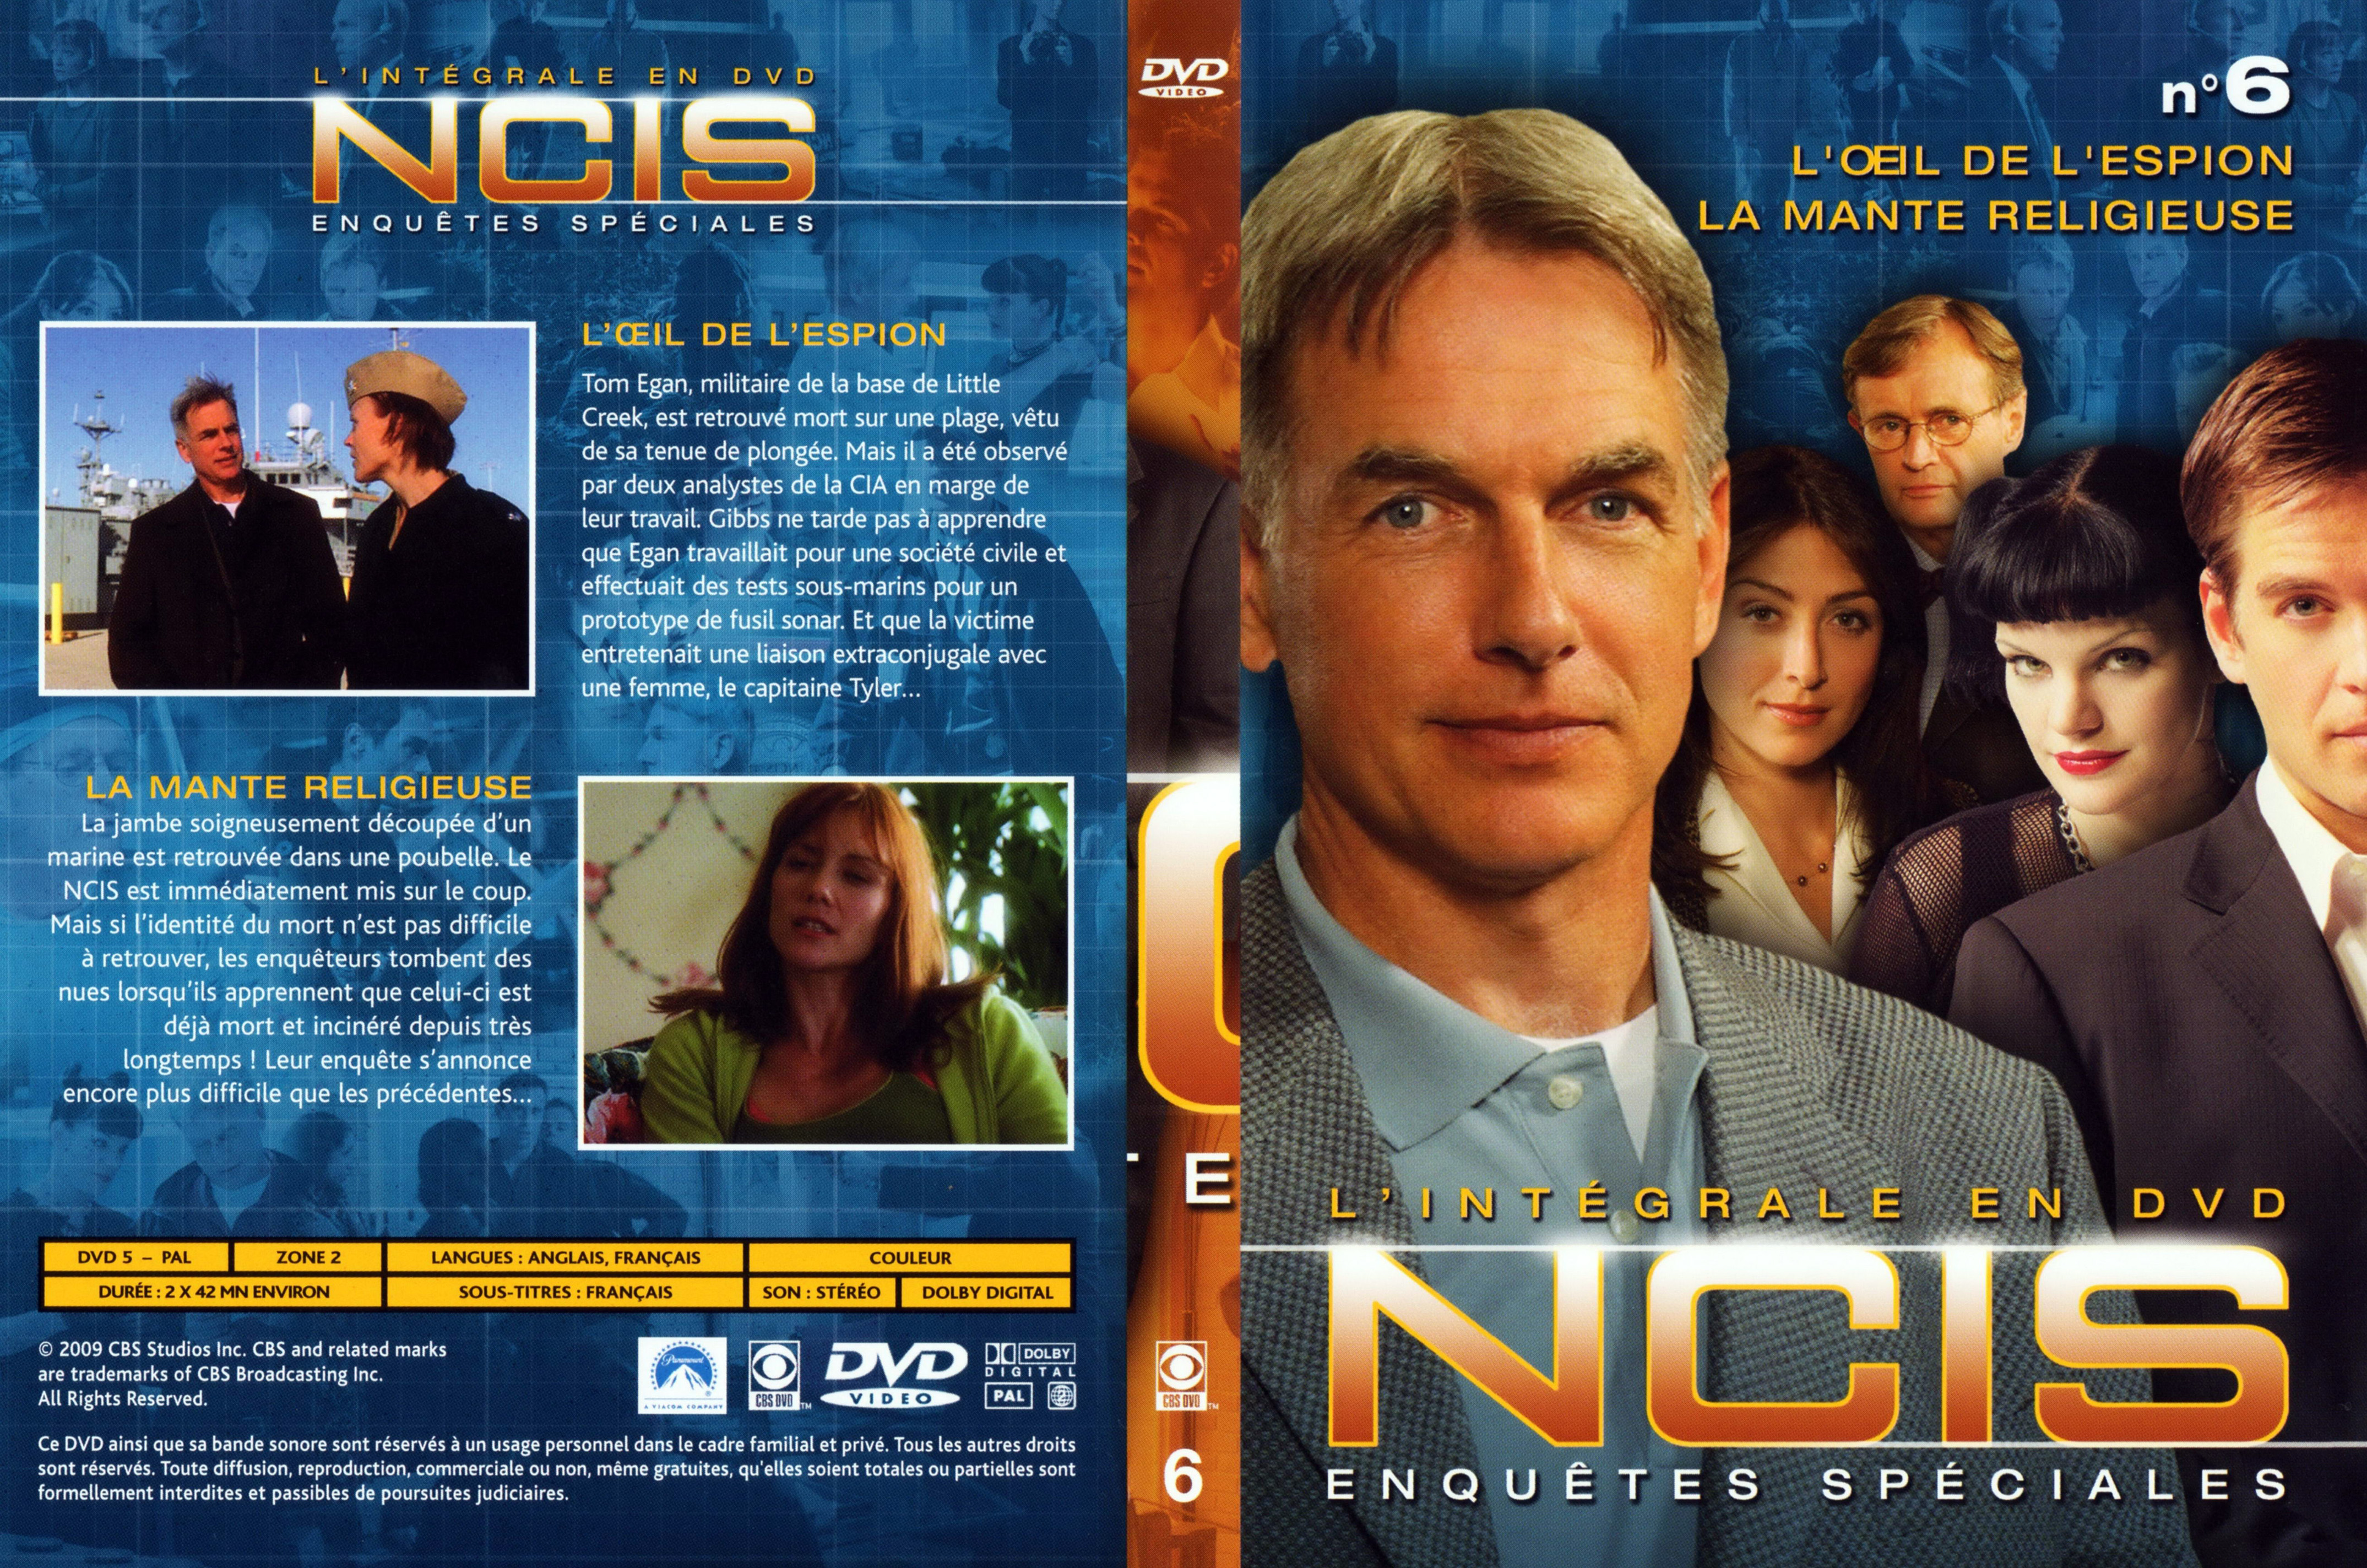 Jaquette DVD NCIS Integrale DVD 6